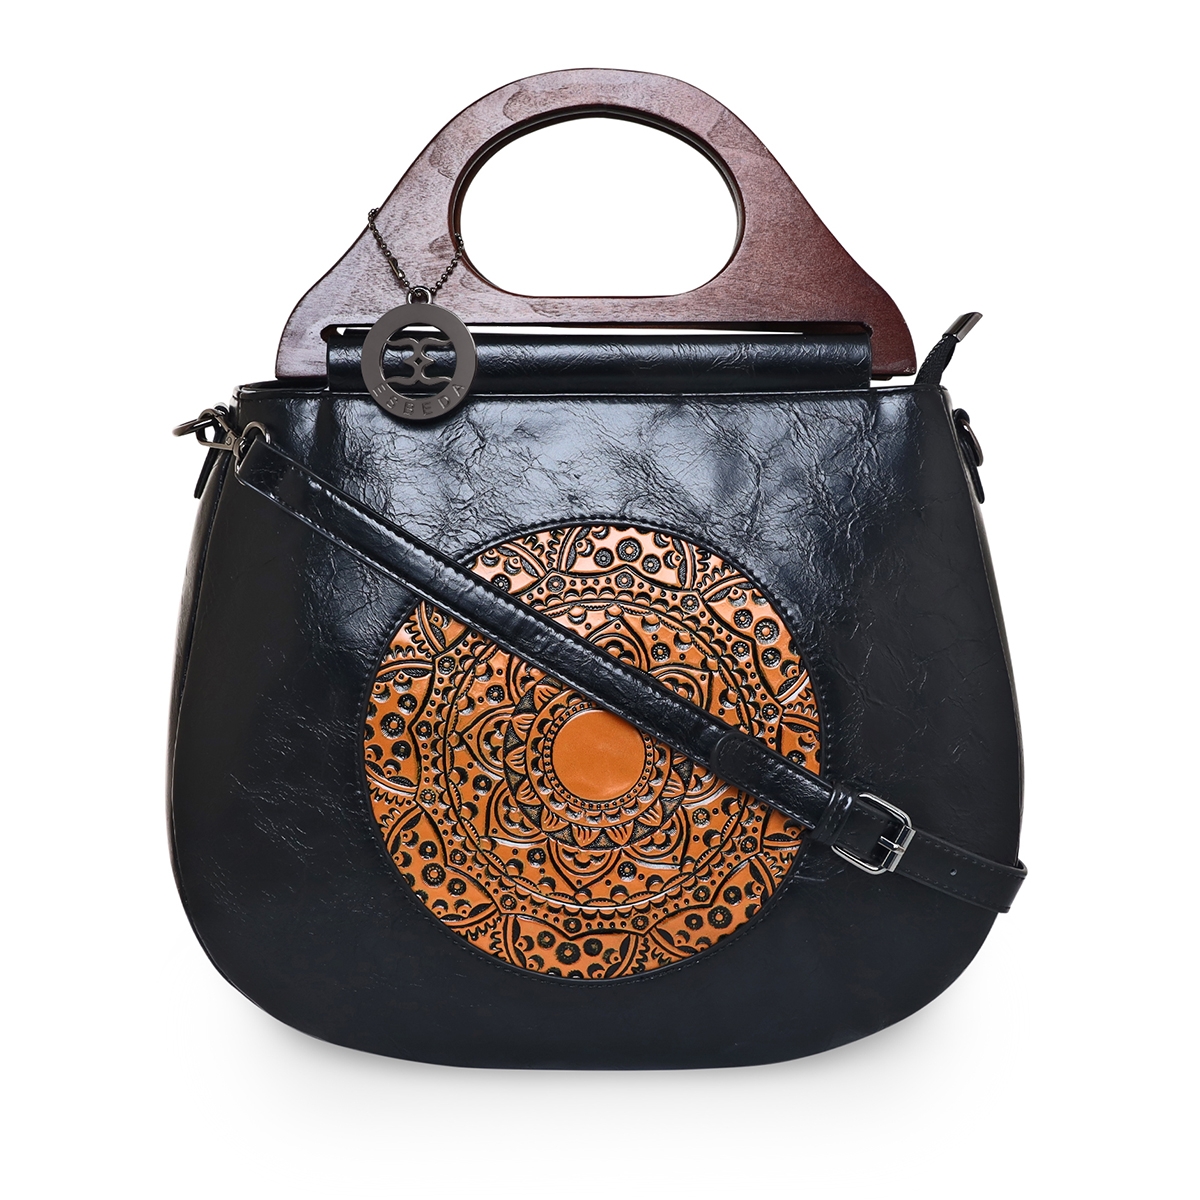 ESBEDA | ESBEDA Black Color Floral Embroidery Pattern Handbag for Women 